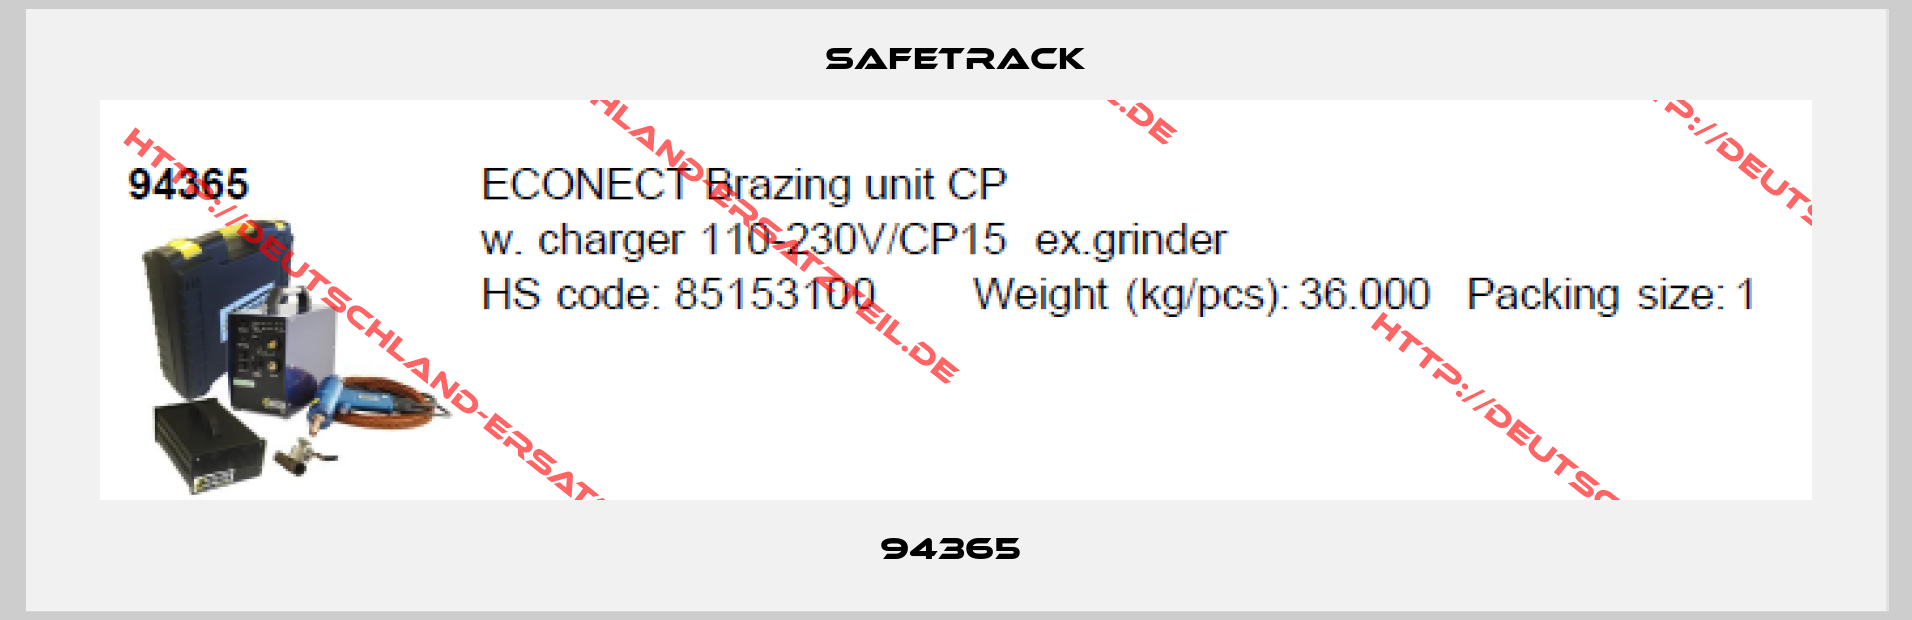 Safetrack-94365 